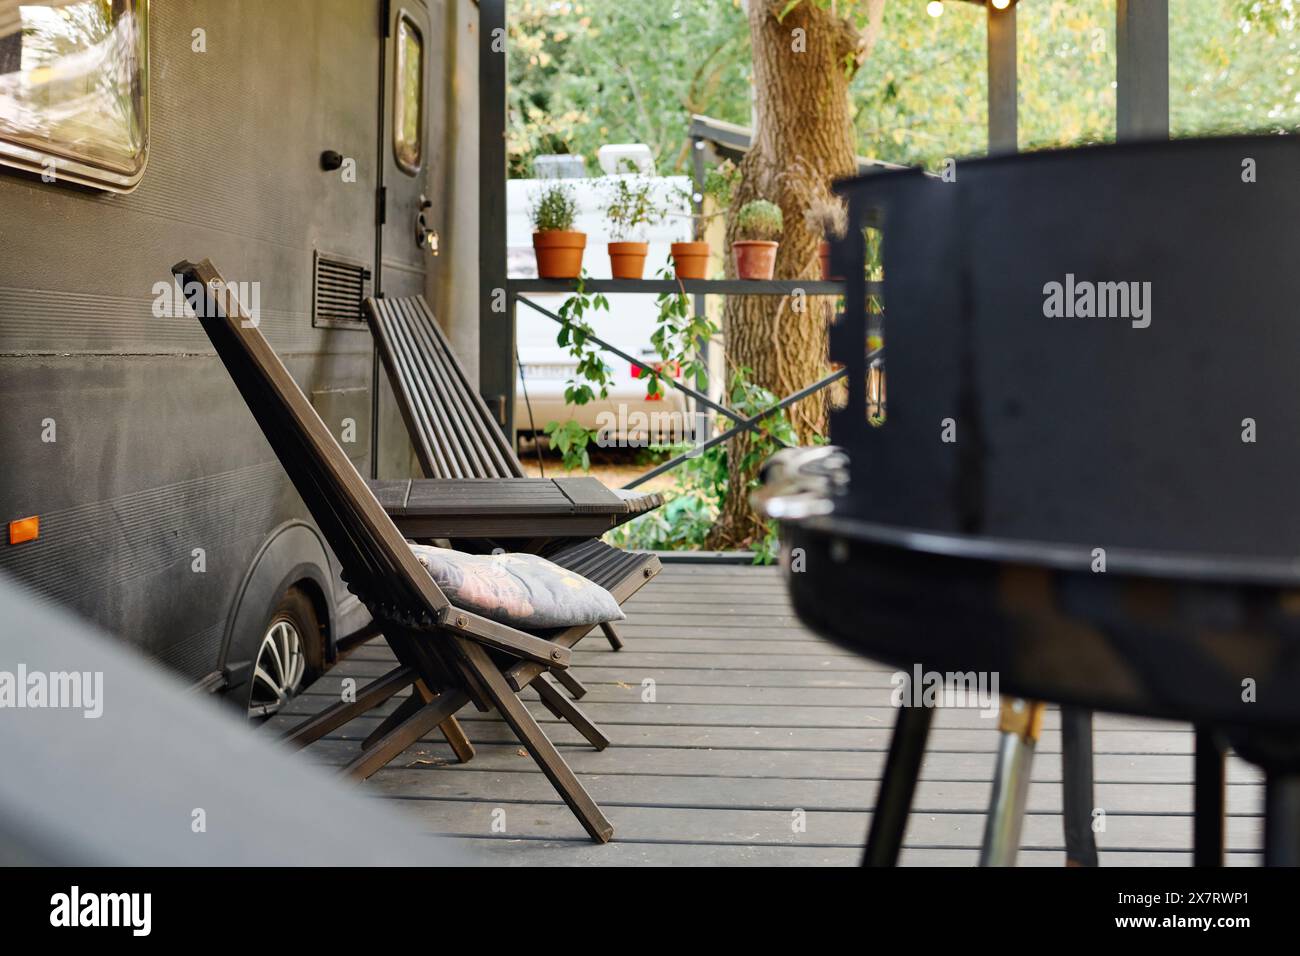 Terrasse mit einem Wohnmobil, Grill und Stühlen, ein romantischer Kurzurlaub in der Natur. Stockfoto